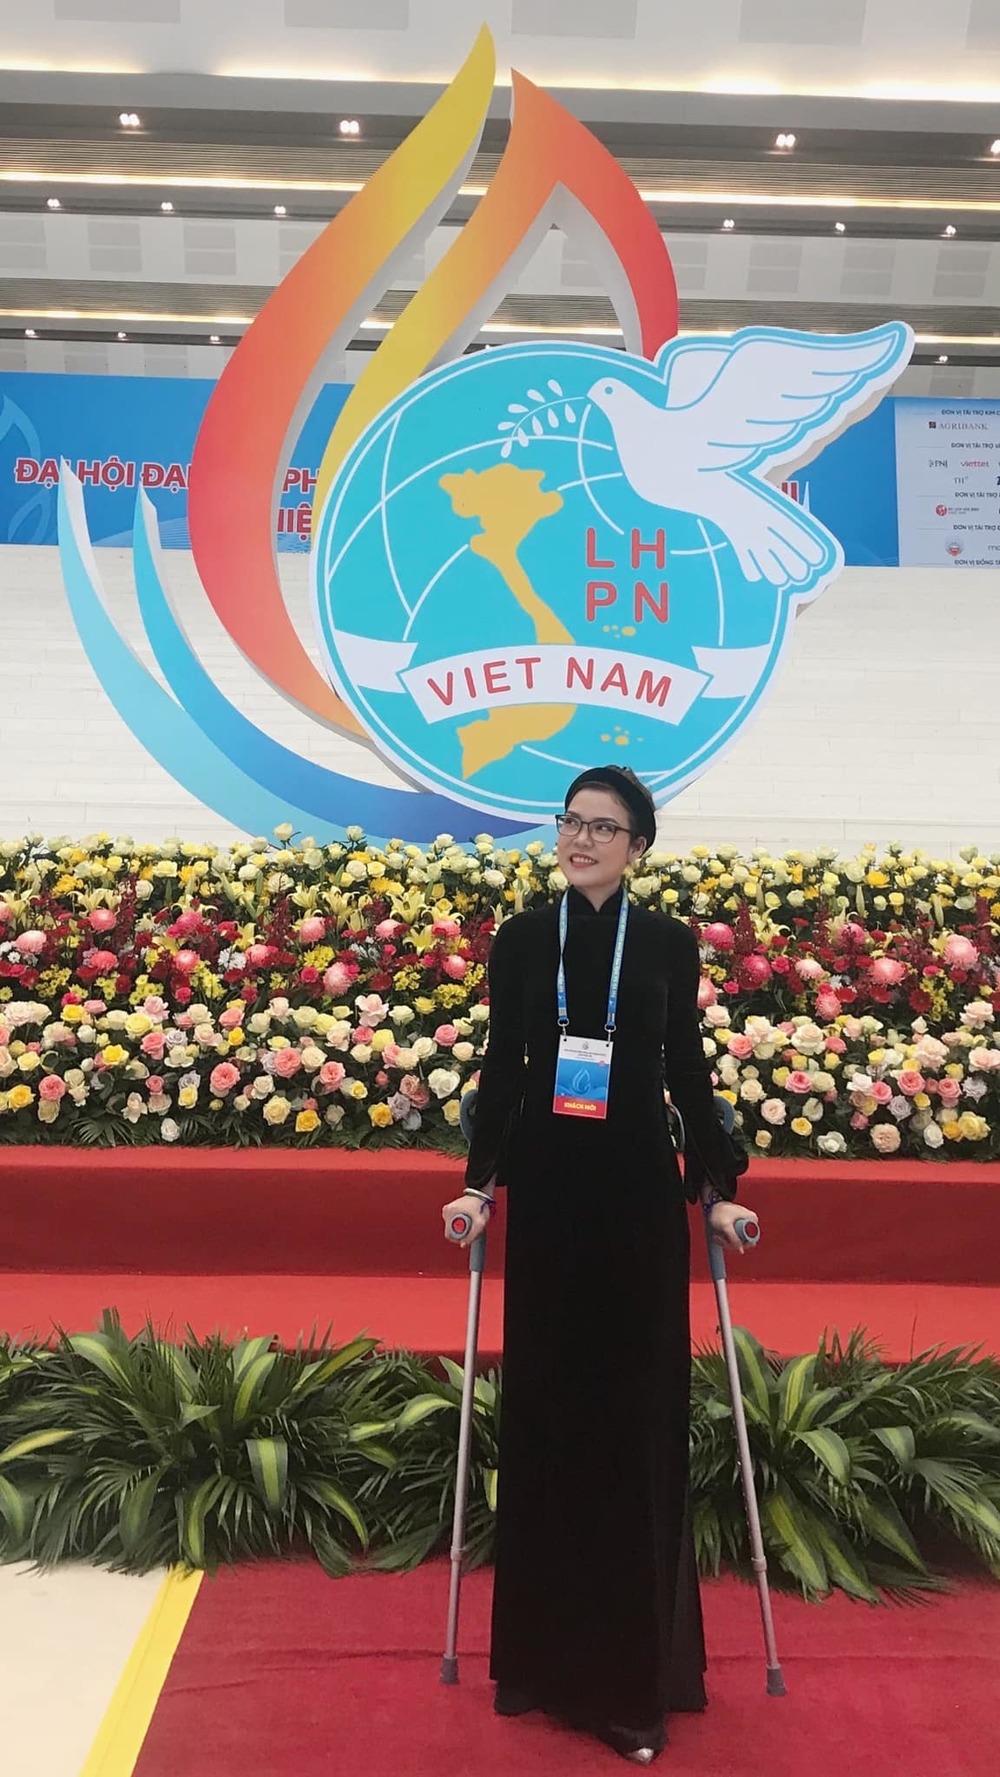  Cô gái dân tộc Tày chống nạng tham dự Đại hội đại biểu Phụ nữ toàn quốc lần thứ 13 khiến nhiều người ngưỡng mộ. (Ảnh: VNPlus)